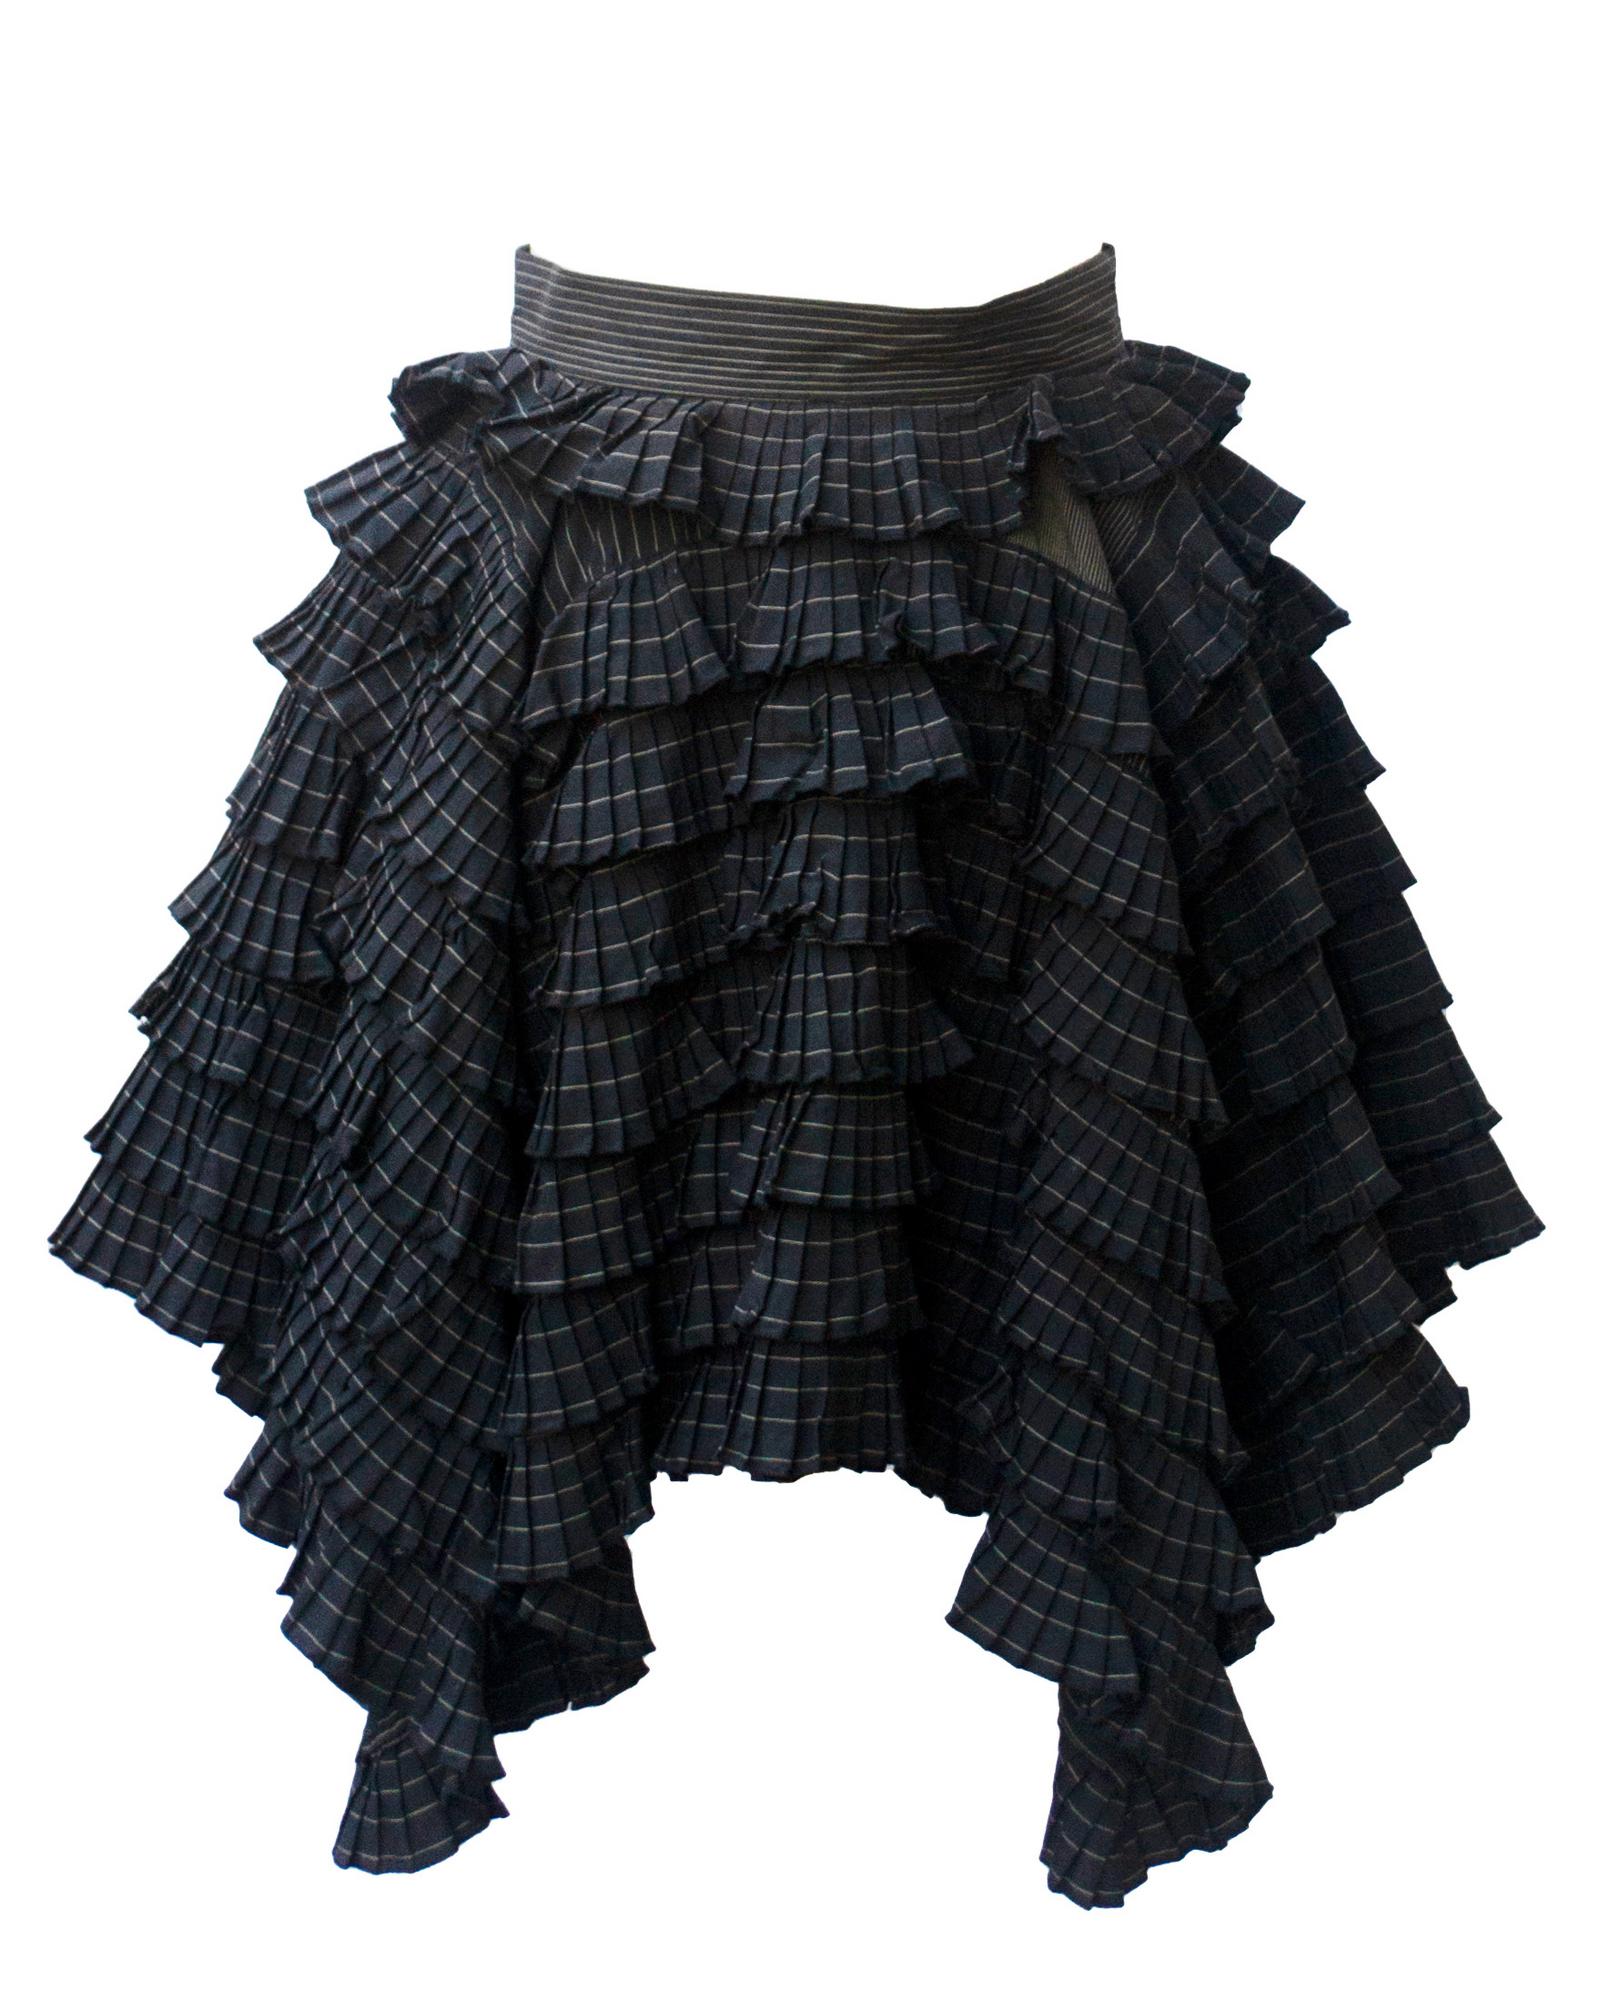 Jean Paul Gaultier RUFFLES SKIRT Description: Dark grey pinstriped cotton for...